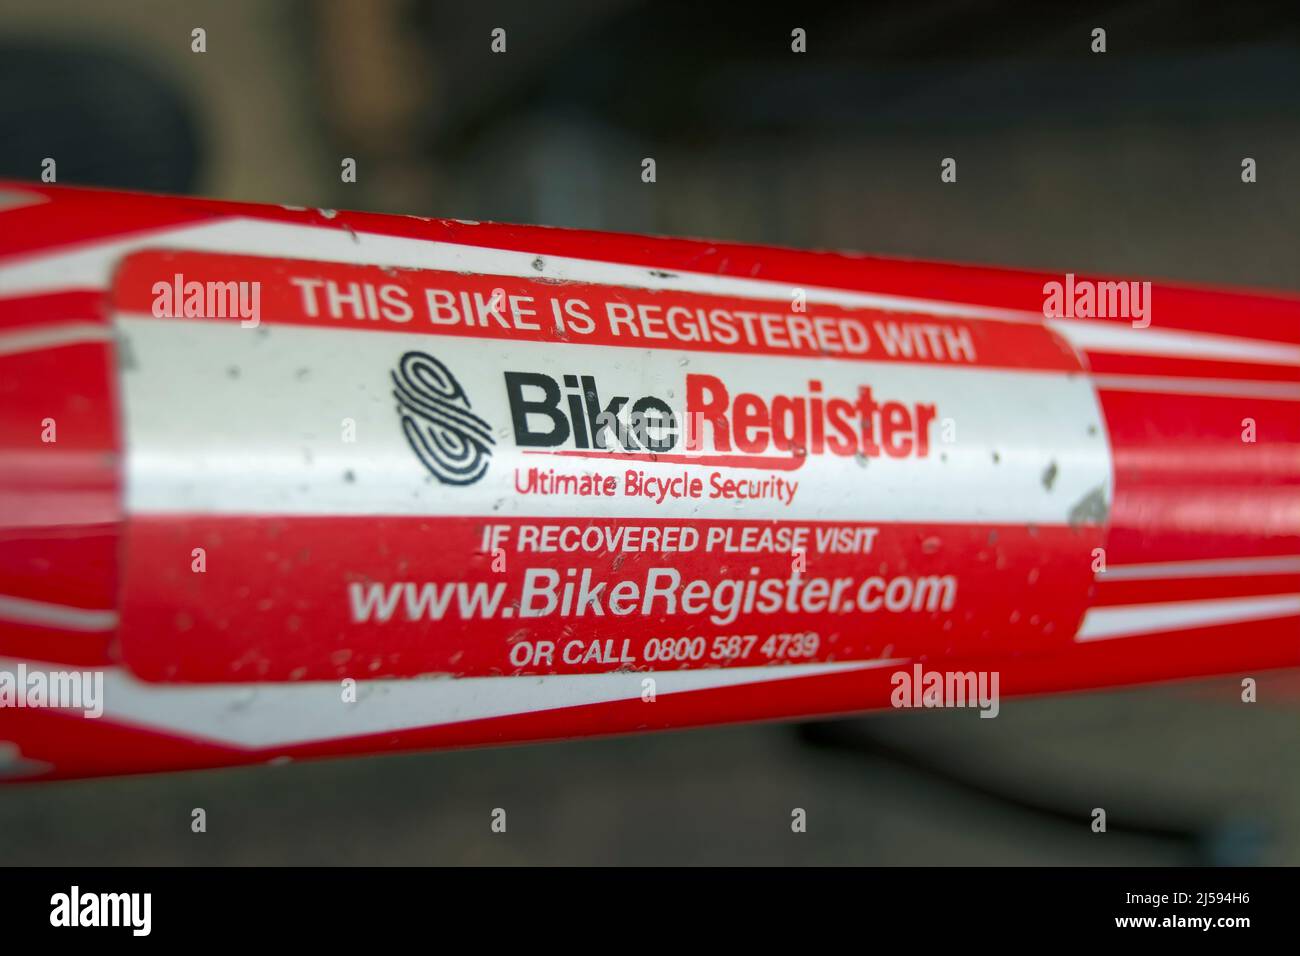 etiqueta de marco de ciclo que indica que el ciclo ha sido registrado en la compañía británica de registro de bicicletas, destinado a disuadir el robo de bicicletas y la reventa ilegal. Foto de stock